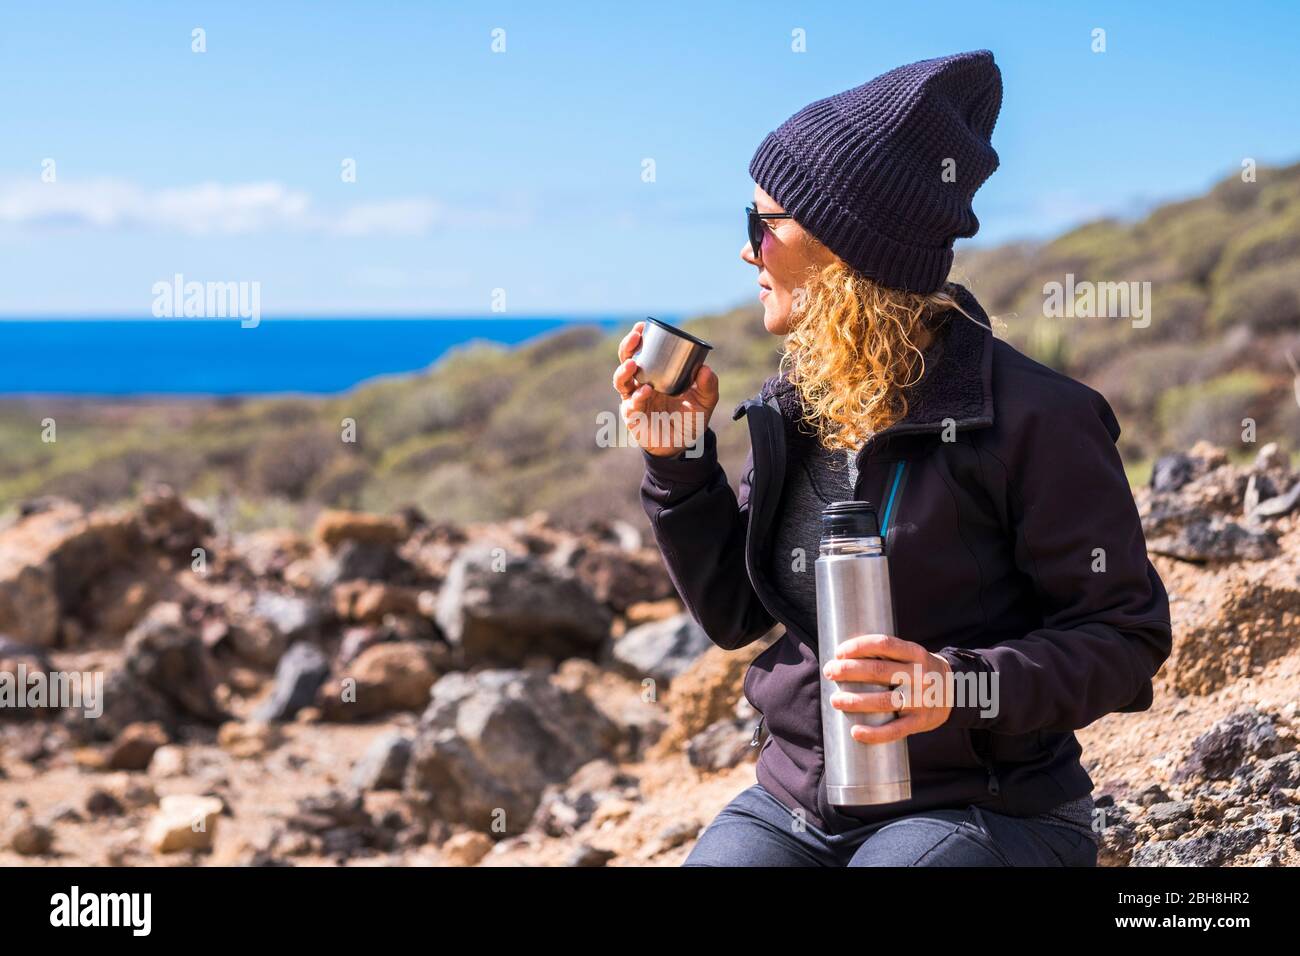 Hübsche Frau mit blonden lockigen Haaren und schwarzem warmen Hut genießen die Outdoor-Aktivität trinken etwas Tee oder Kaffee und Blick auf das Meer im Hintergrund - himer und Trekking-Konzept für freie Menschen Stockfoto